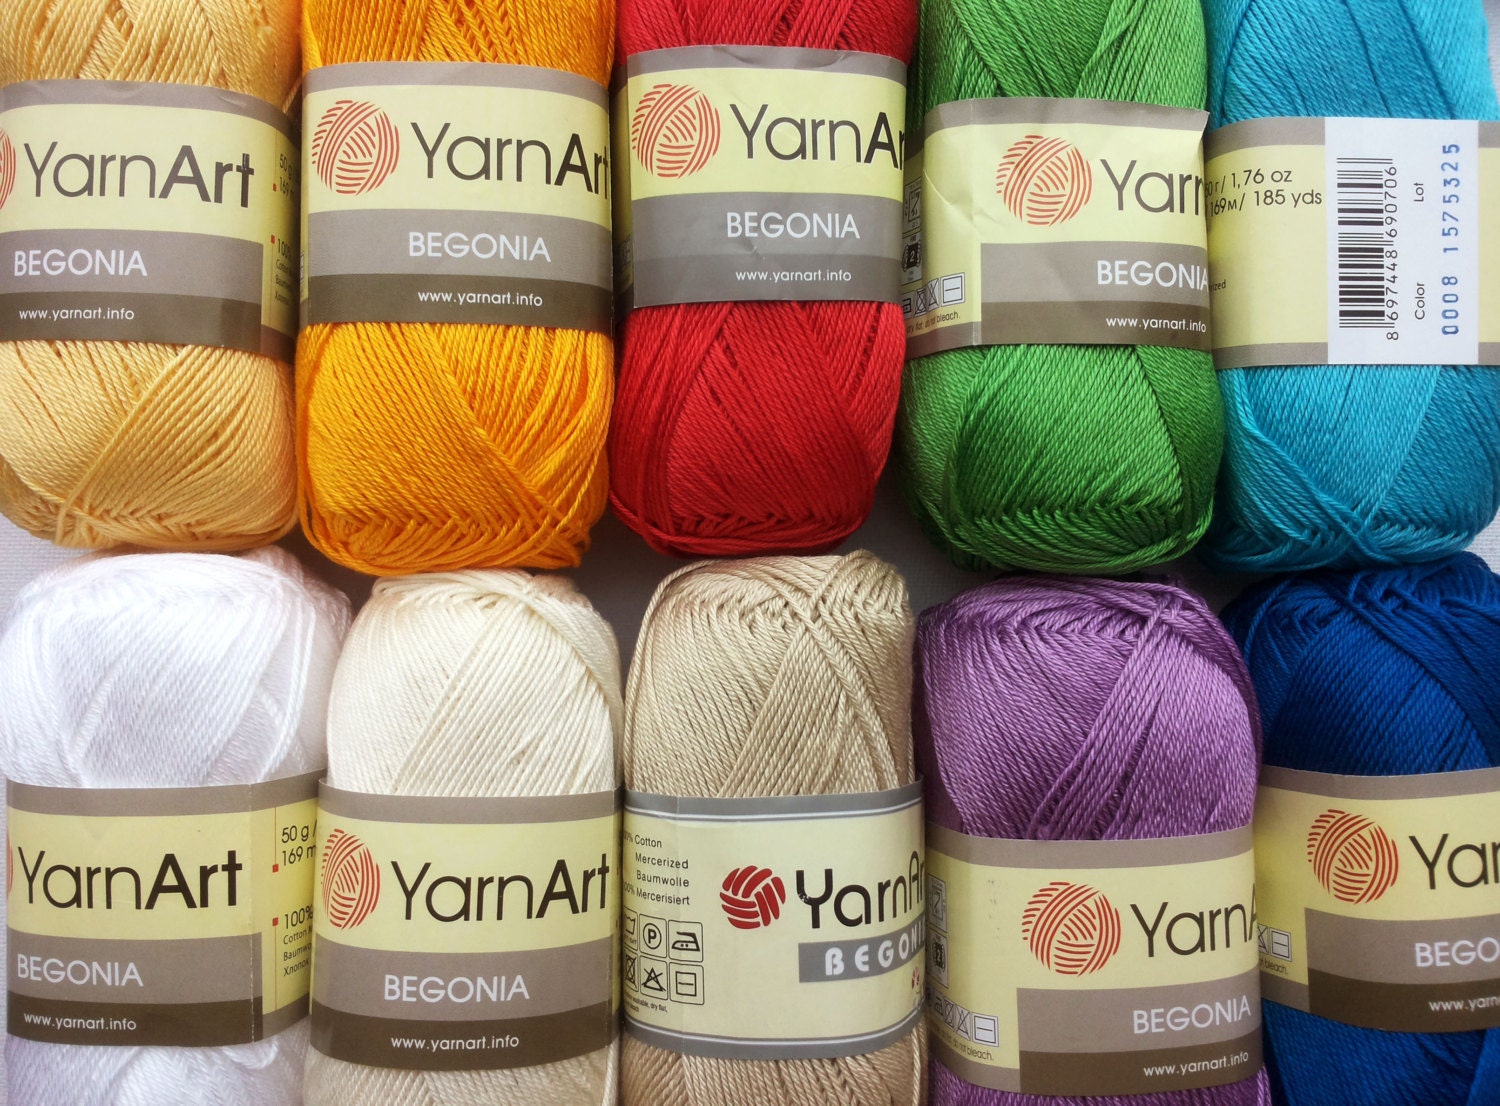 Hilo de algodón 100% mercerizado para tejer crochet de Yarnart begonia 50g  169m -  México